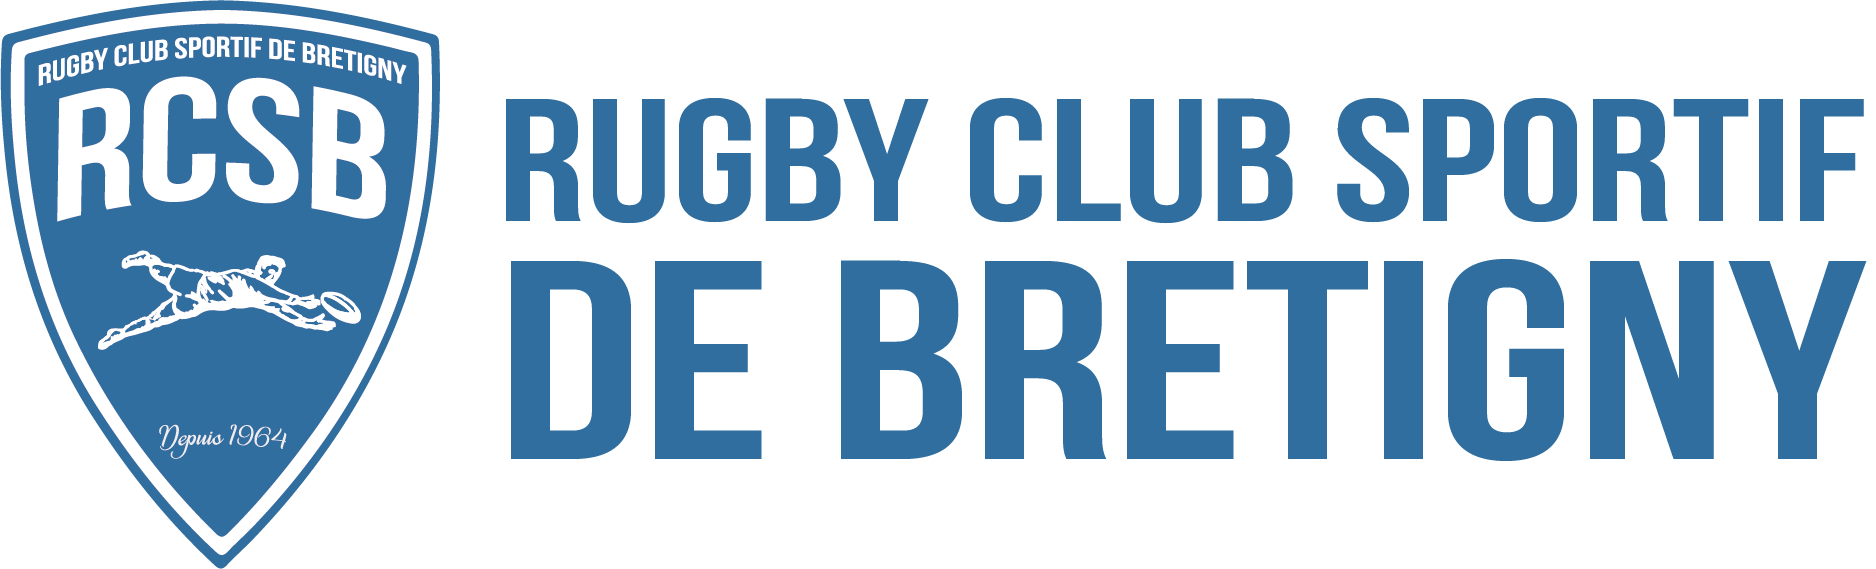 Rugby Club Sportif de Brétigny